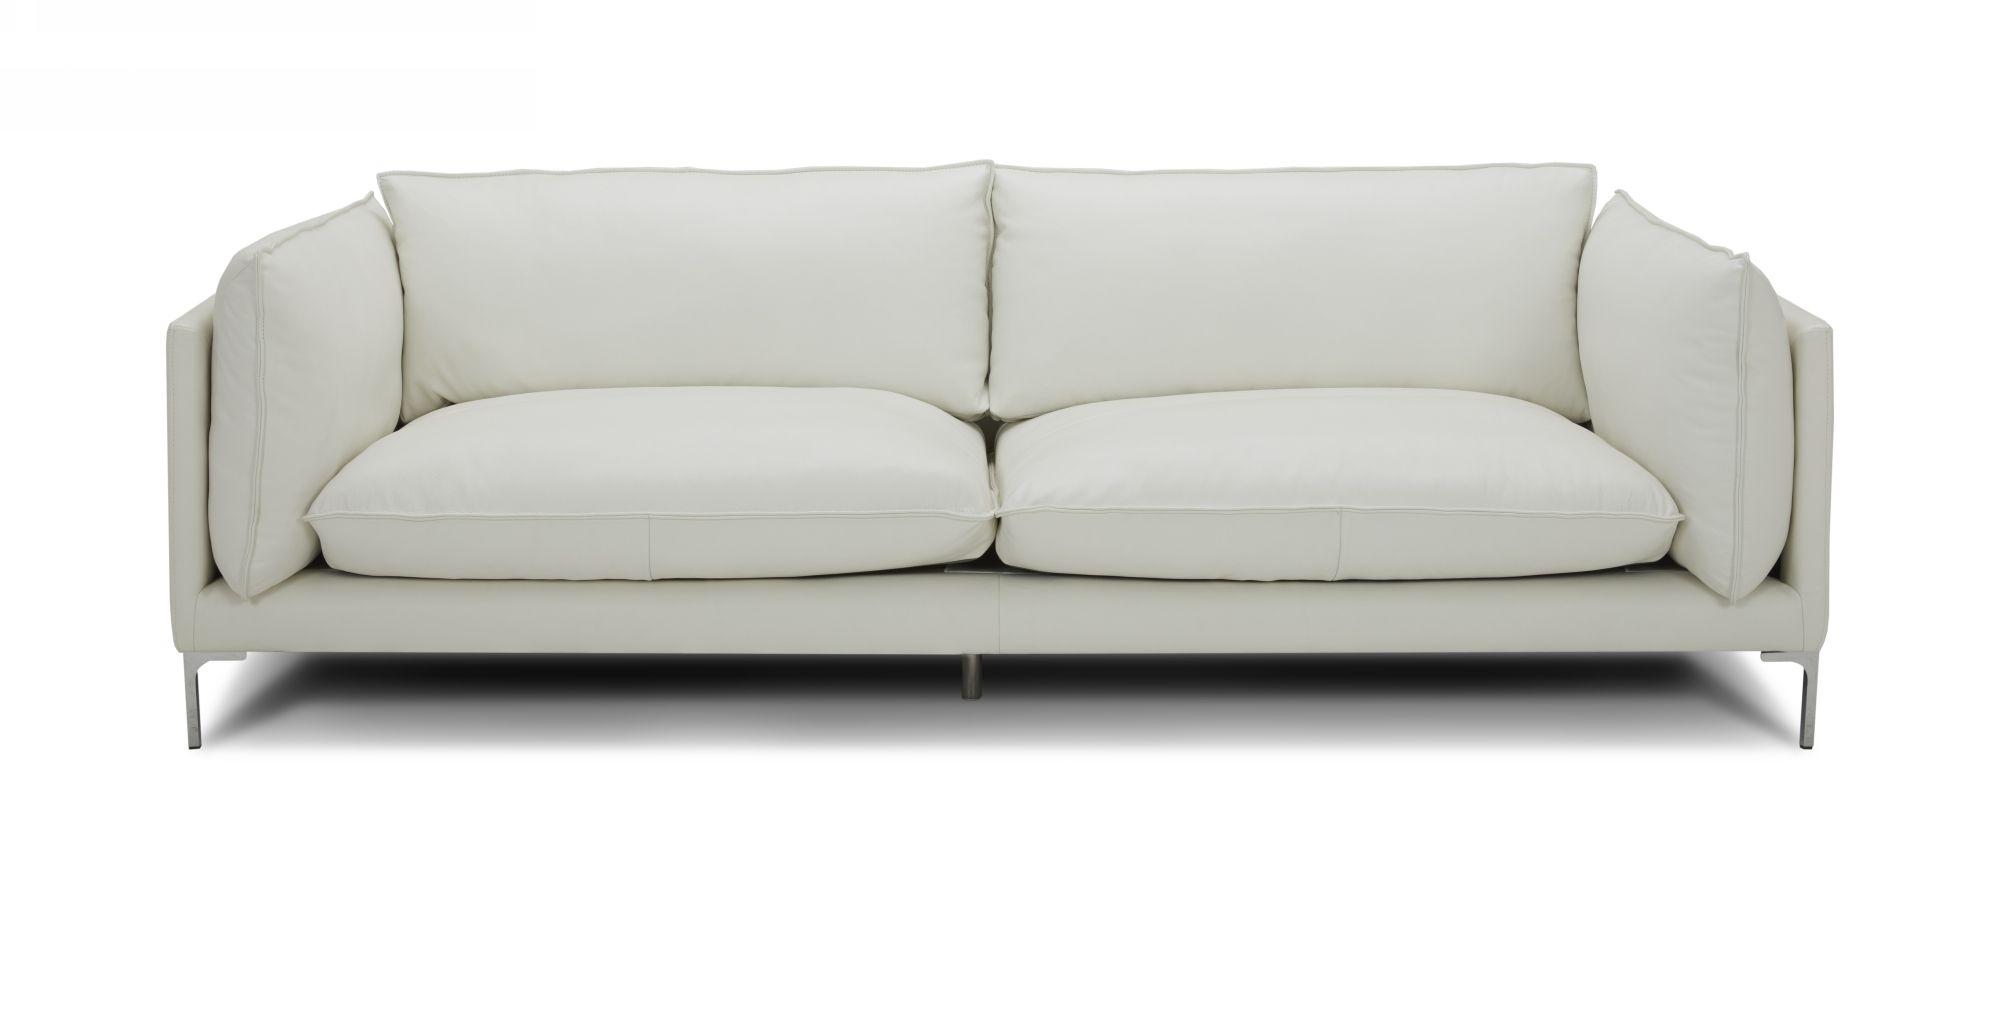 Contemporary, Modern Sofa VGKKKF2627-L2927-SOFA VGKKKF2627-L2927-SOFA in White Full Leather